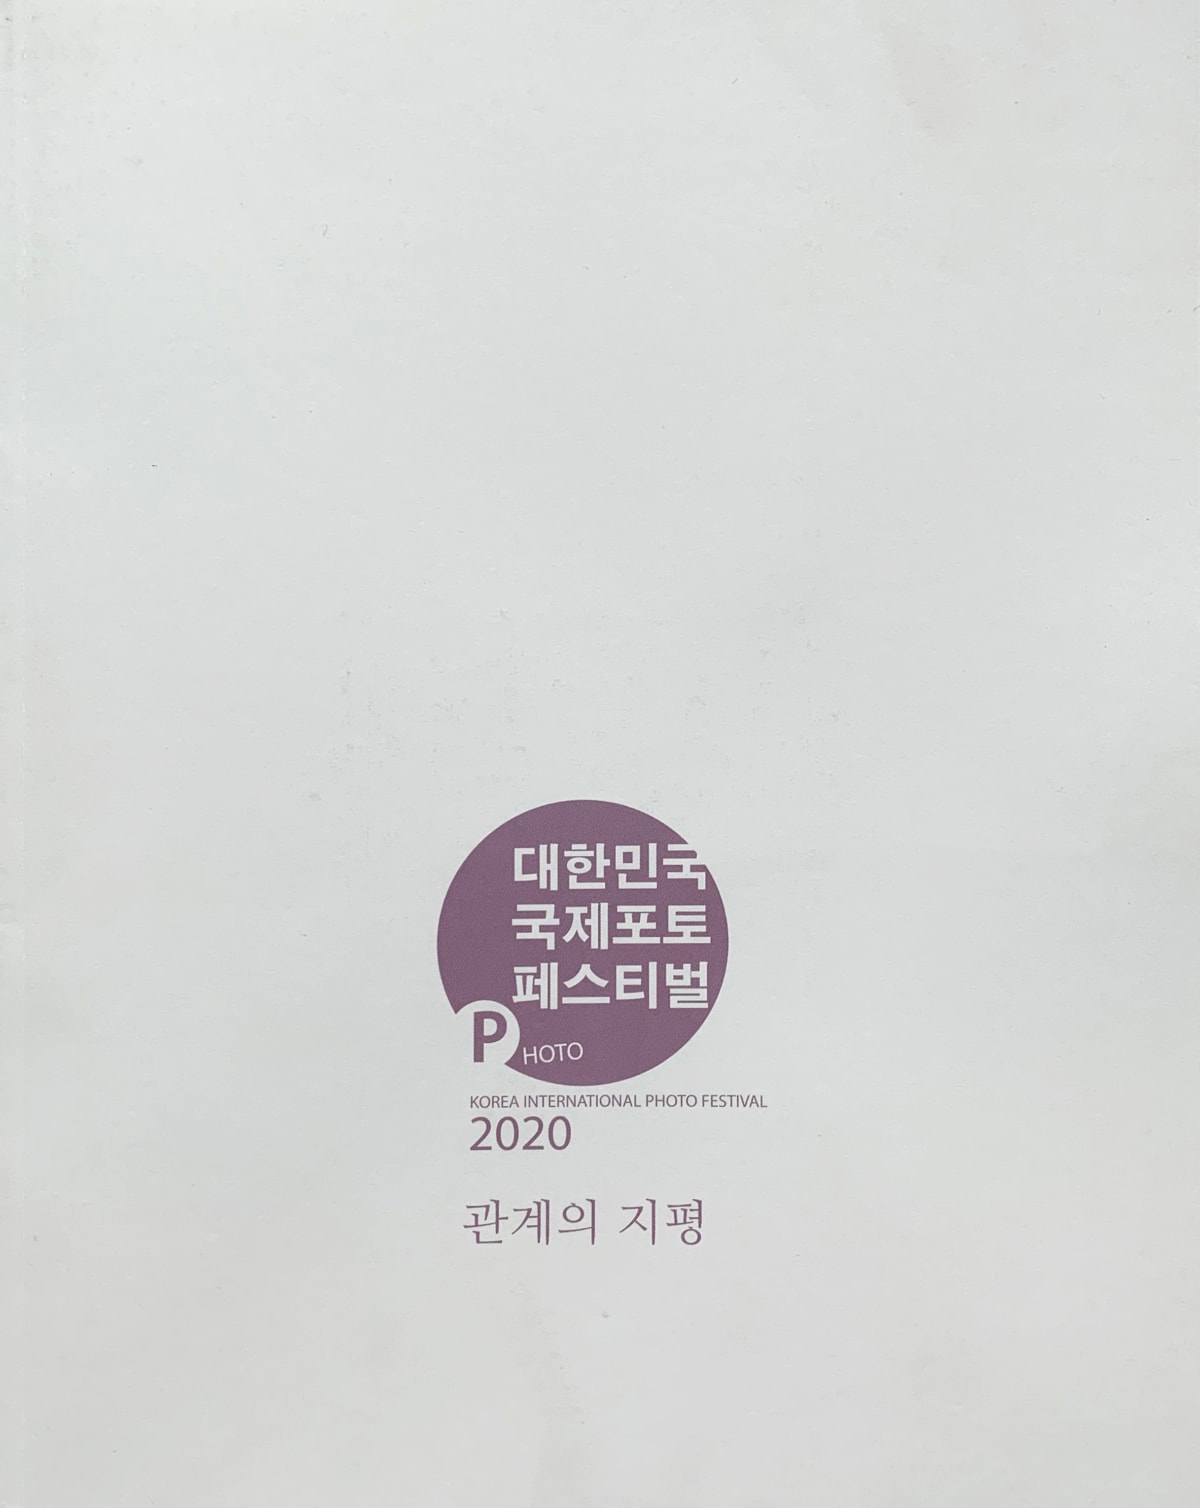 Das 7. Korea International Photo Festival 2020